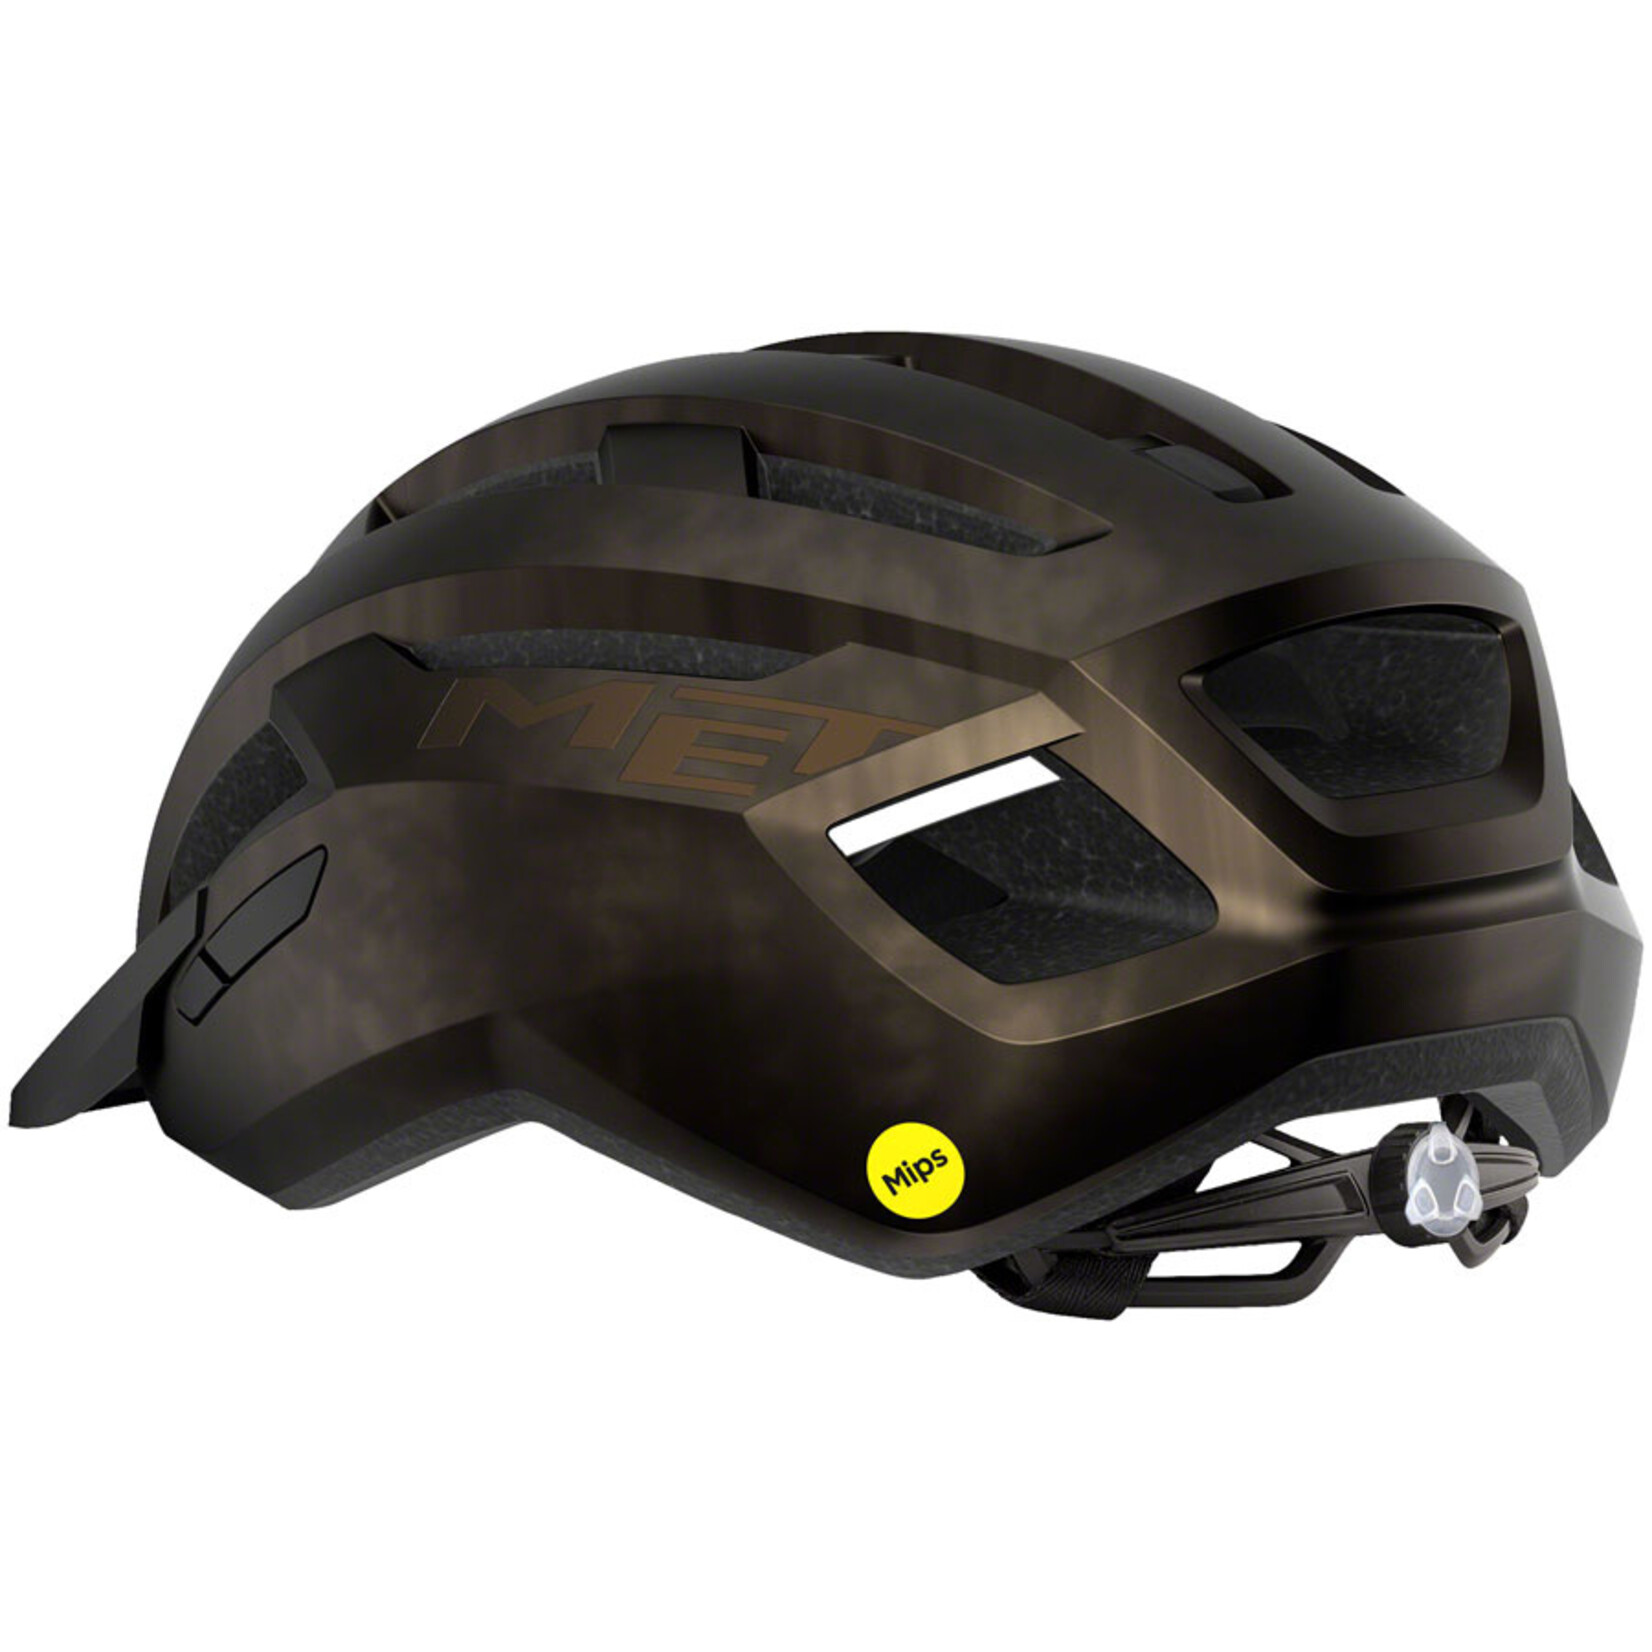 MET Helmets MET Allroad MIPS Helmet - Bronze, Large